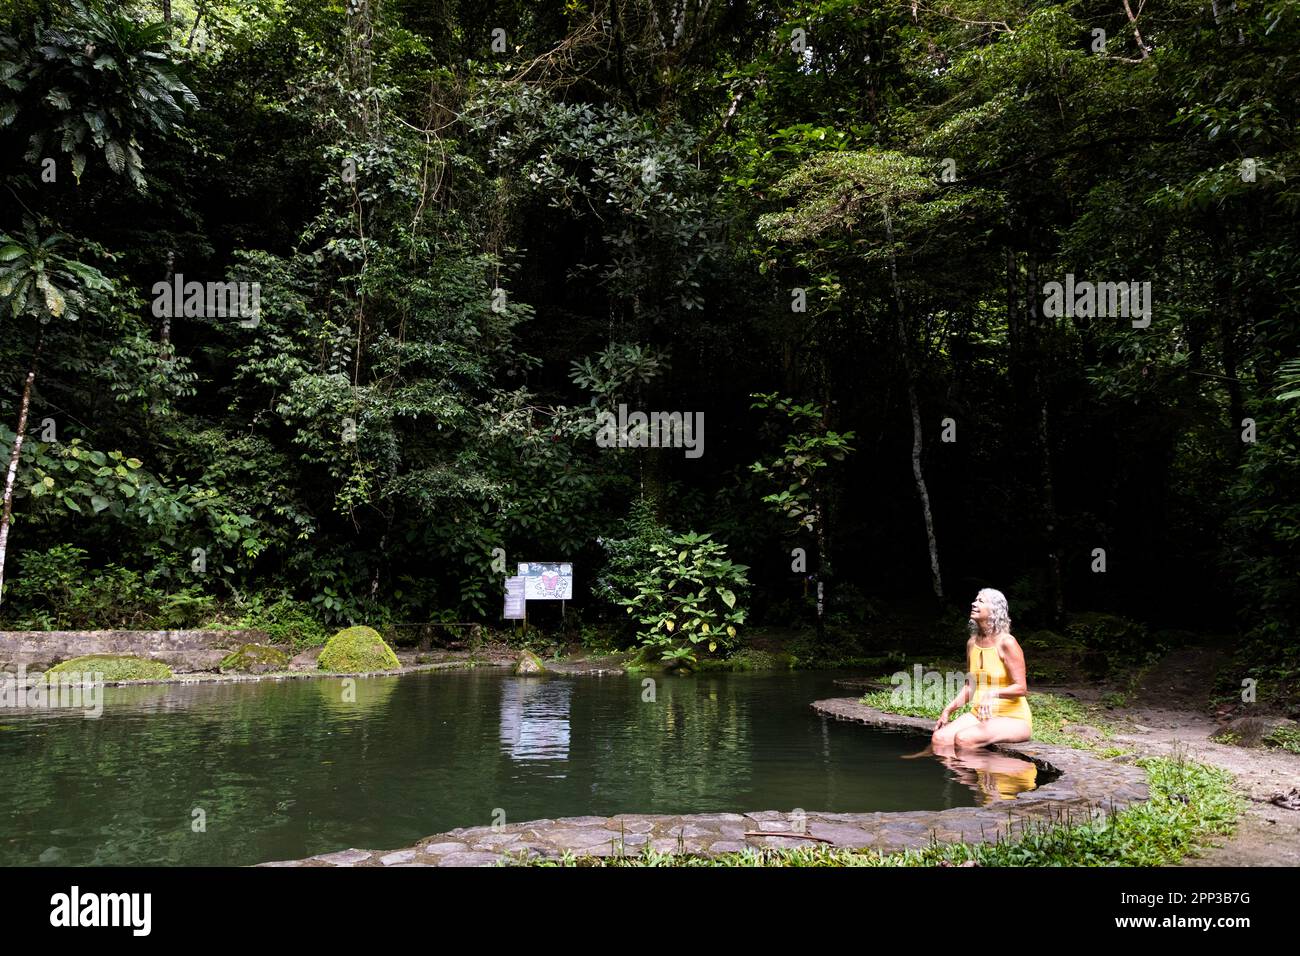 Une femme âgée active admire la jungle avant une baignade rafraîchissante sous la pluie dans une piscine de roche alimentée par Chorro Macho près de El Valle Anton au Panama Banque D'Images